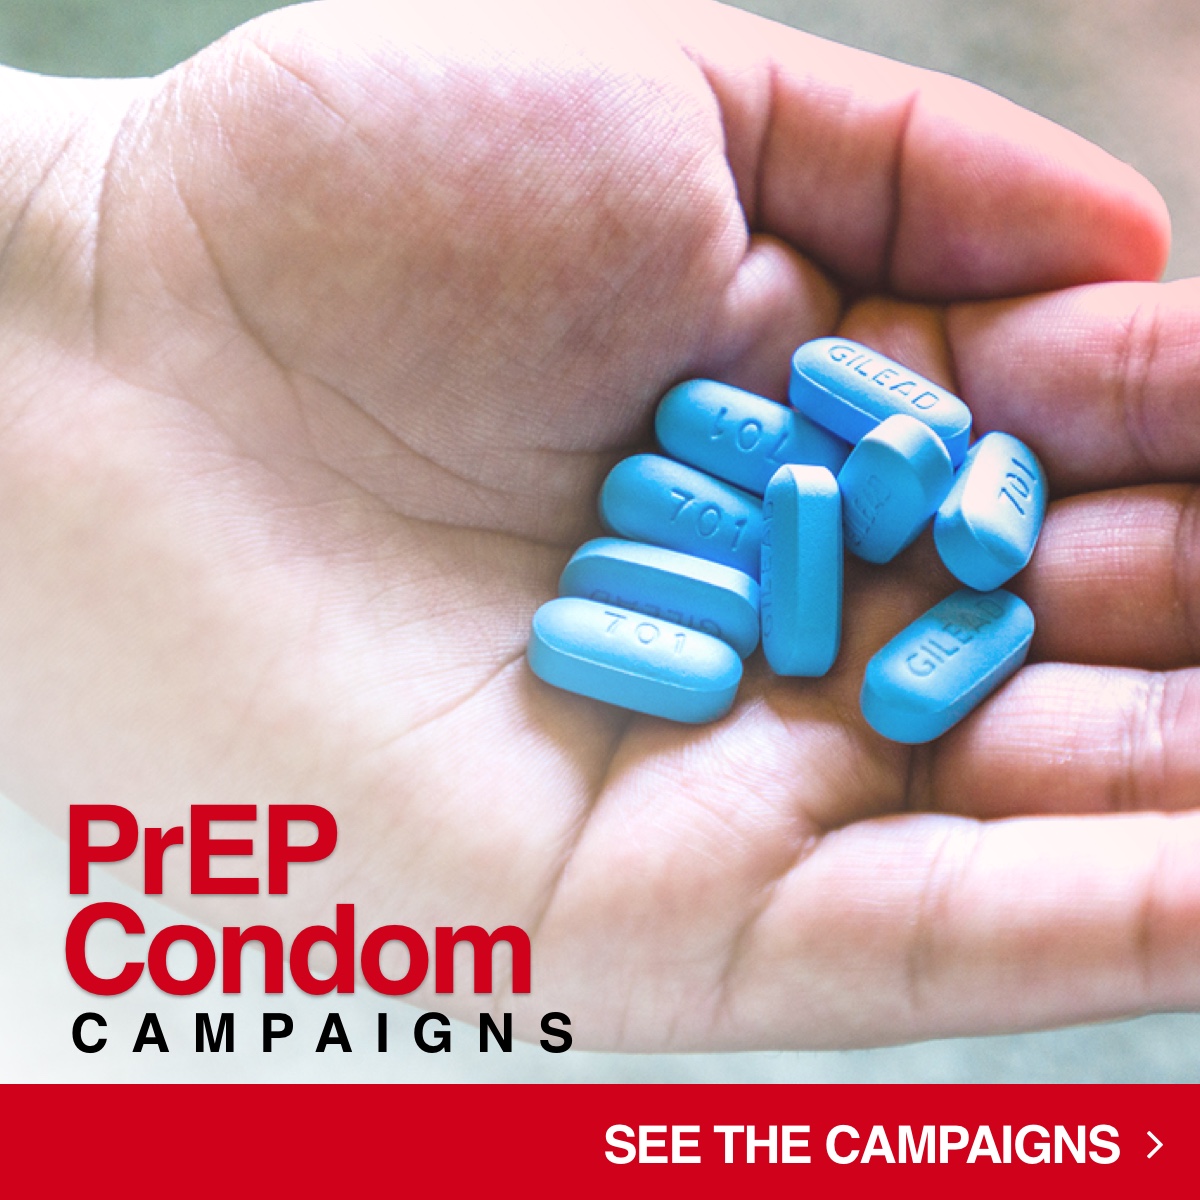 PrEP Condoms